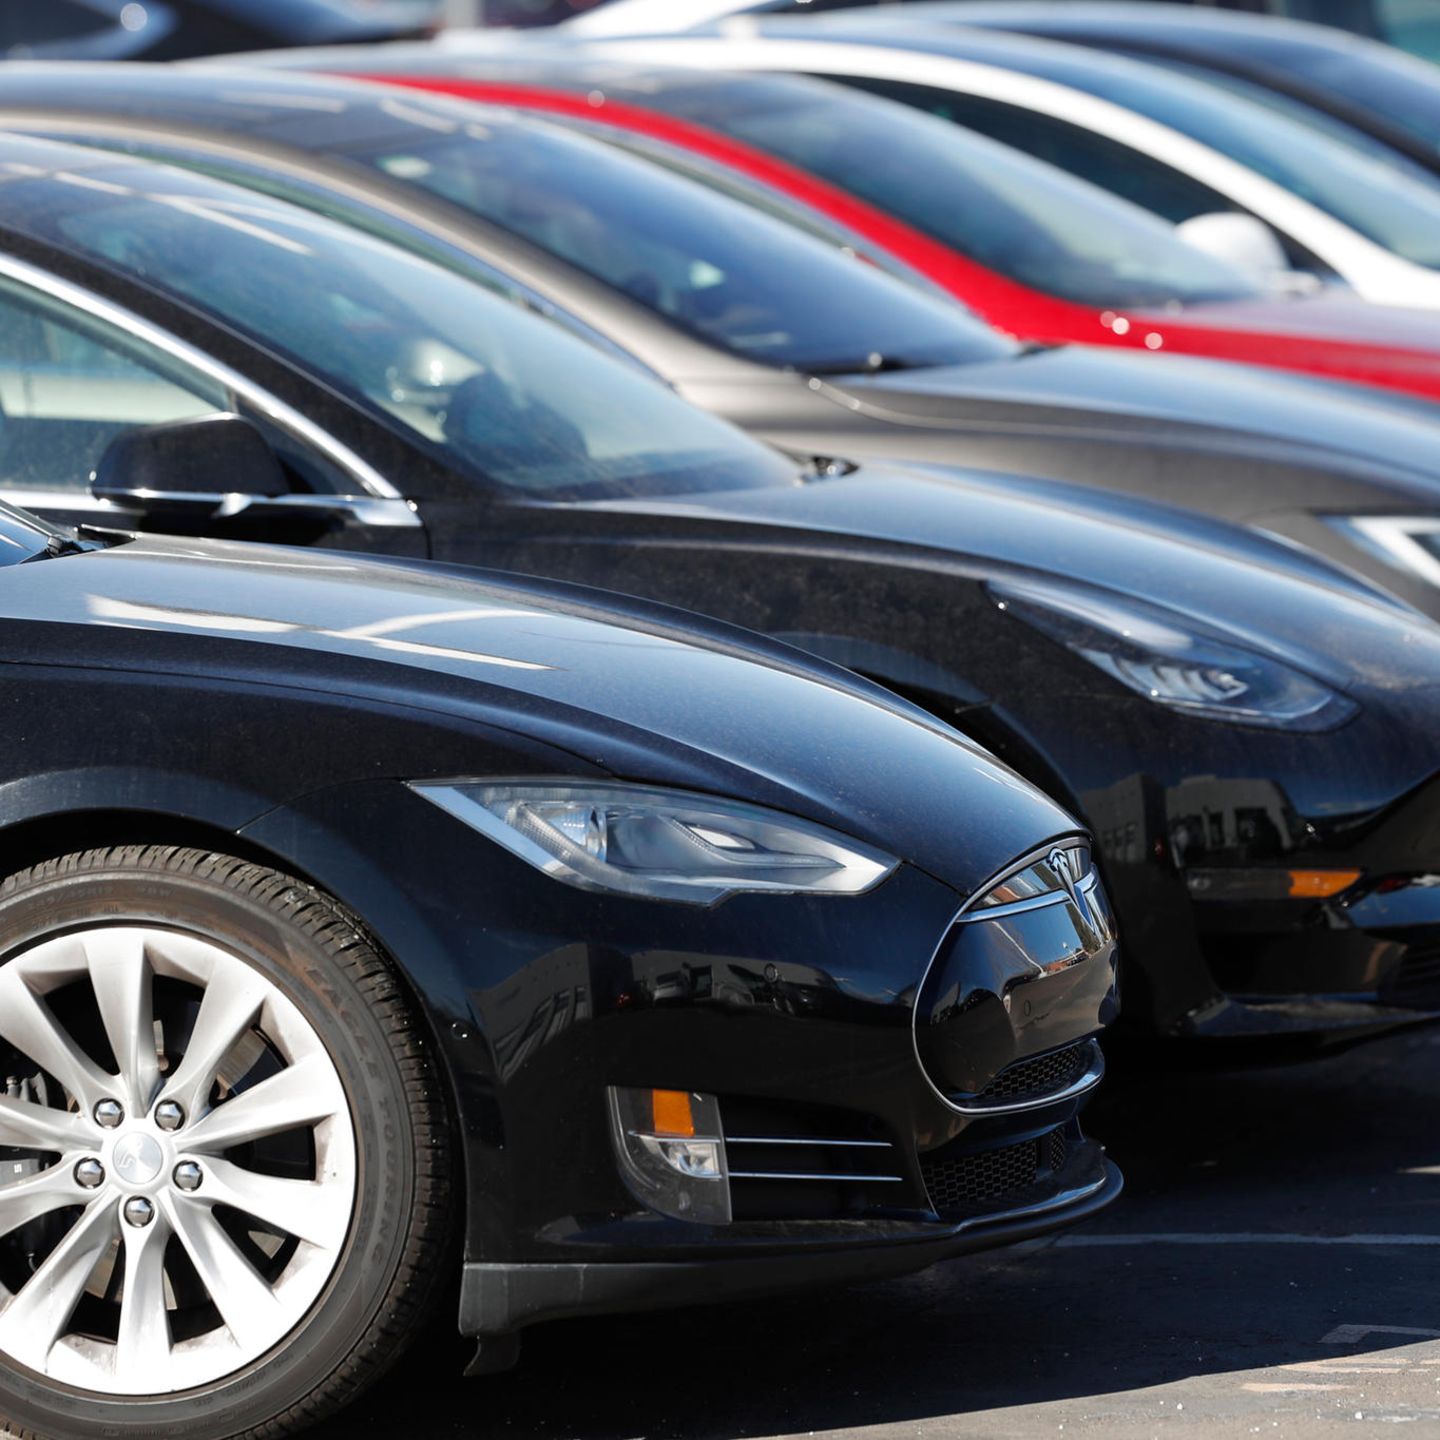 Tesla: Warum die Preise von gebrauchten Autos immer weiter steigen